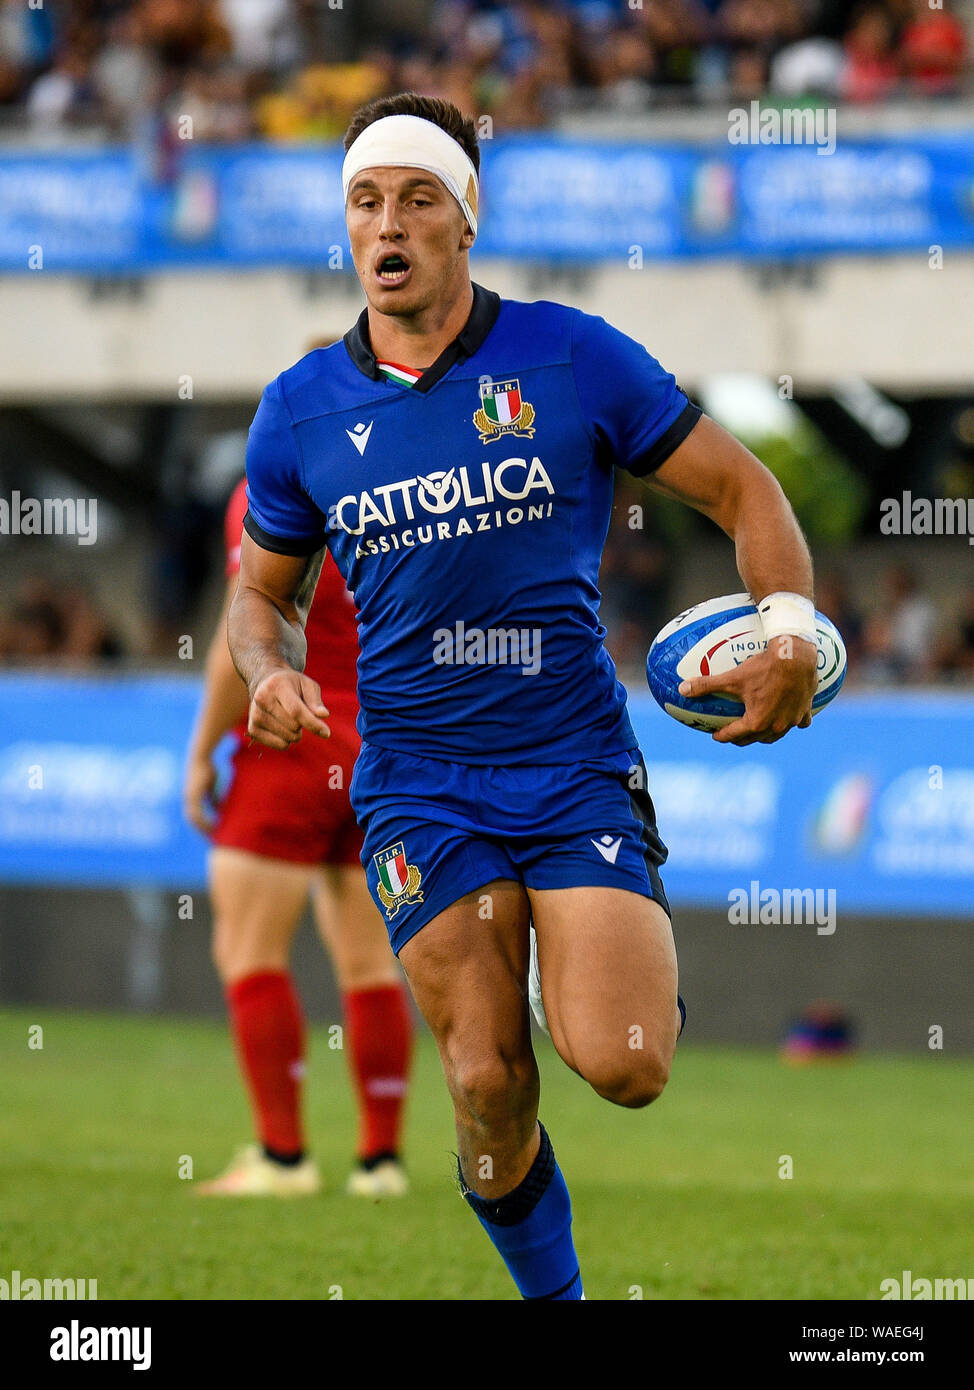 San Benedetto del Tronto, Italy, 17 Aug 2019, Tommaso ALLAN (Italia) during  the Cattolica Test Match 2019 - Italia vs Russia Rugby Nazionali Italiane  Stock Photo - Alamy